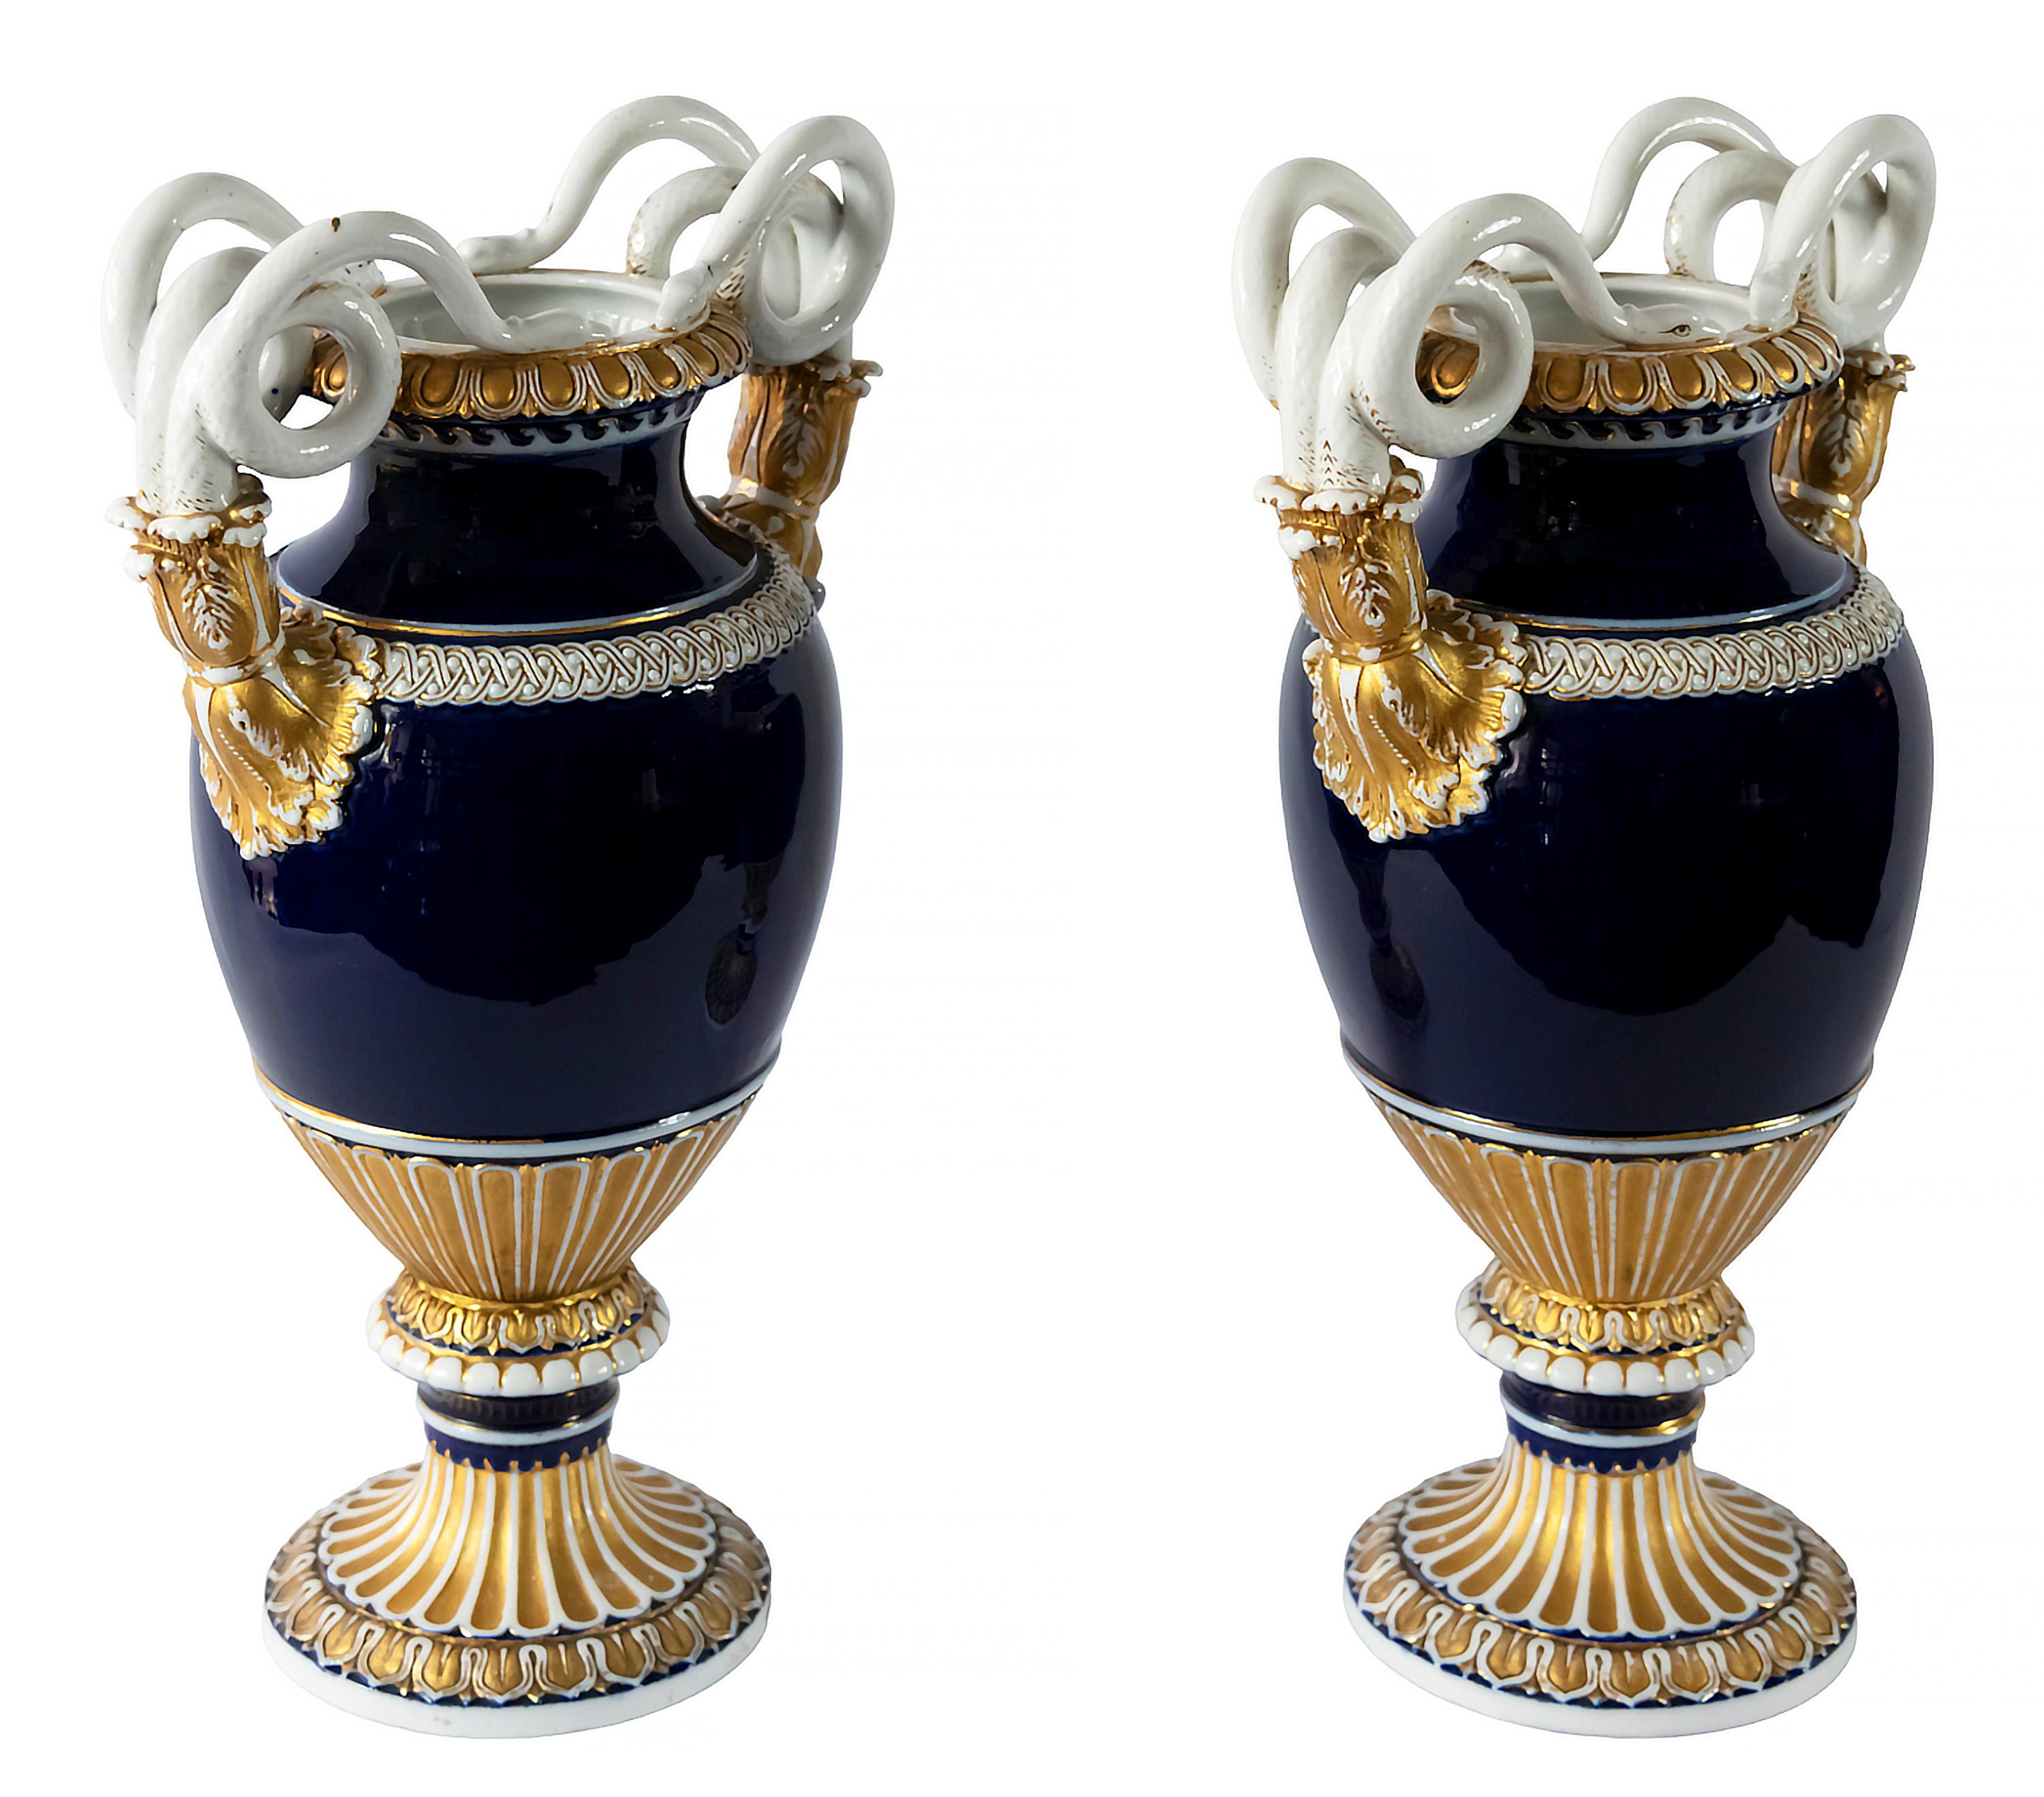 Paar antike deutsche Meissener Porzellanvasen, entworfen von August Leuteritz, verziert mit Schlangenhenkeln, kobaltblauer Farbe und Gold.
Meissener Marke auf dem Sockel (1860-1924).
Sehr guter antiker Zustand.